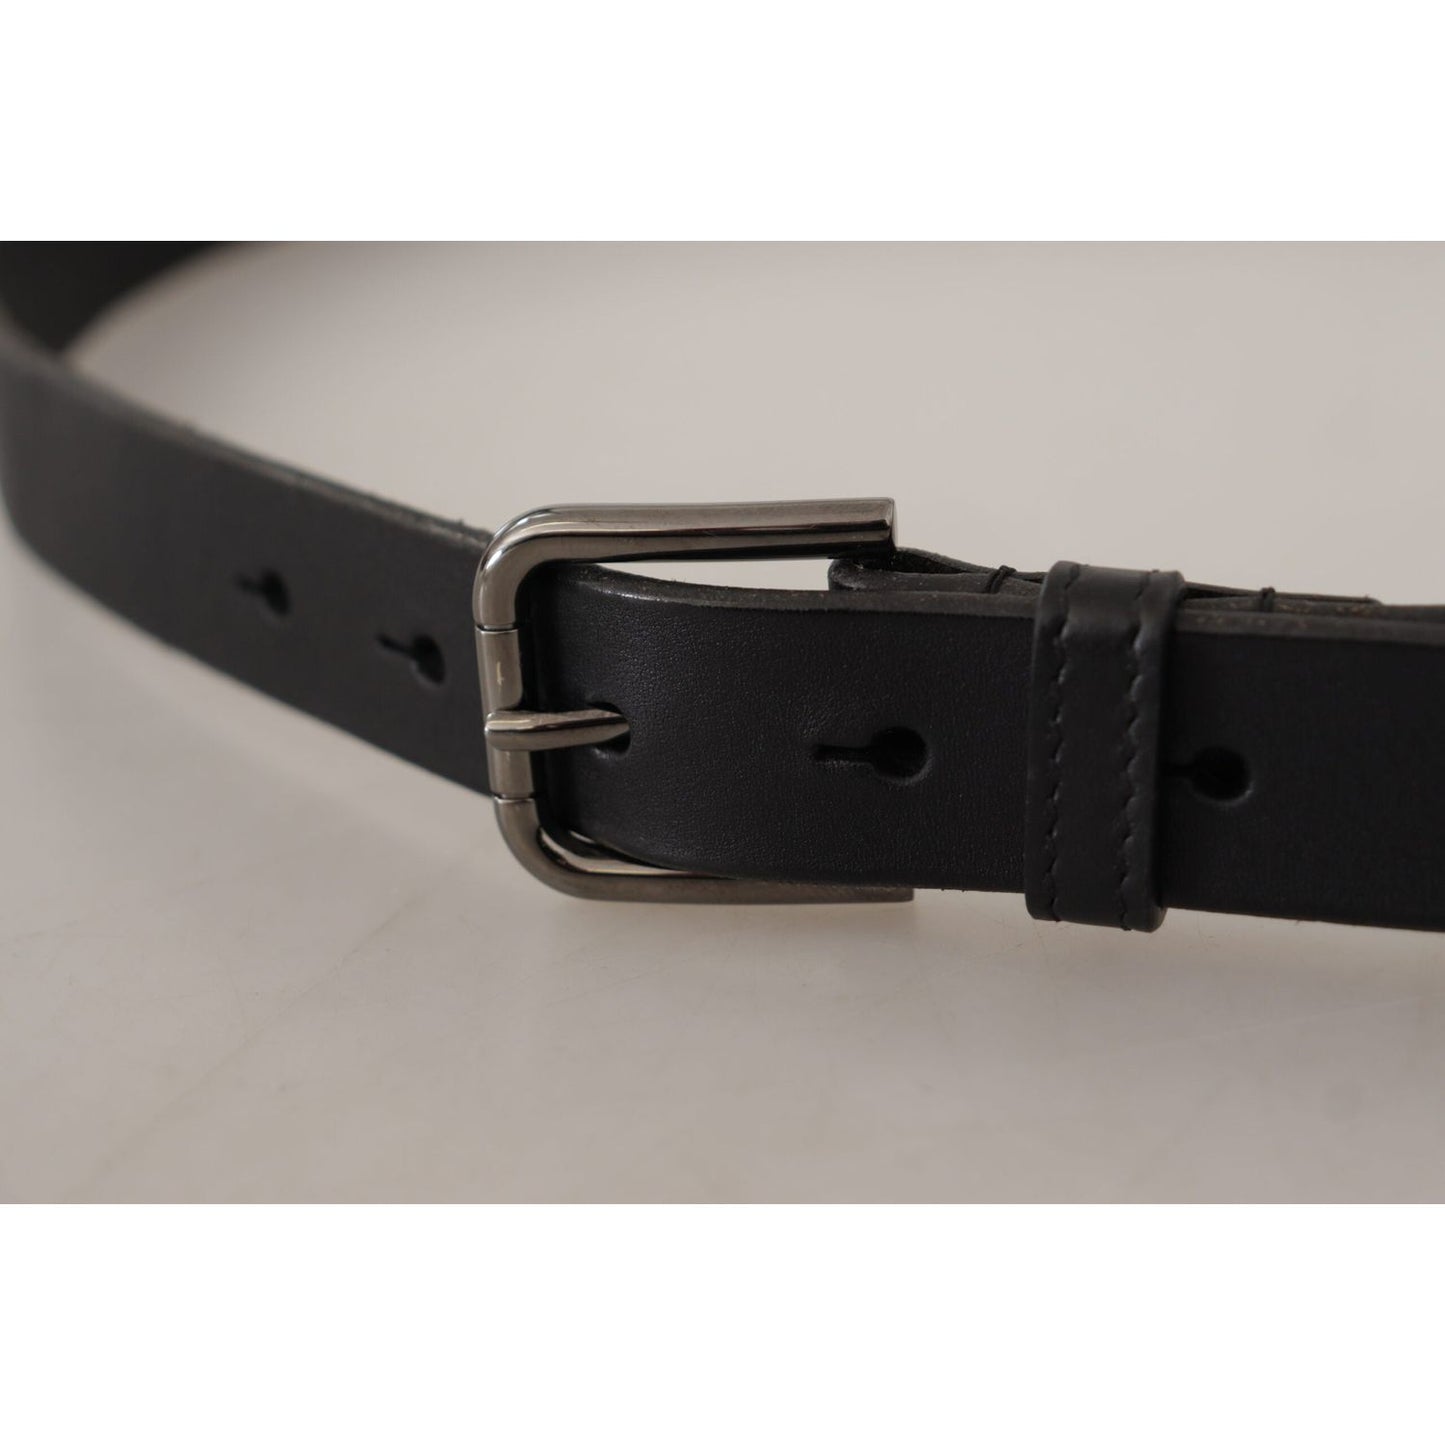 Dolce & Gabbana Elegant Black Leather Belt with Metal Buckle black-calf-leather-logo-engraved-metal-buckle-belt-6